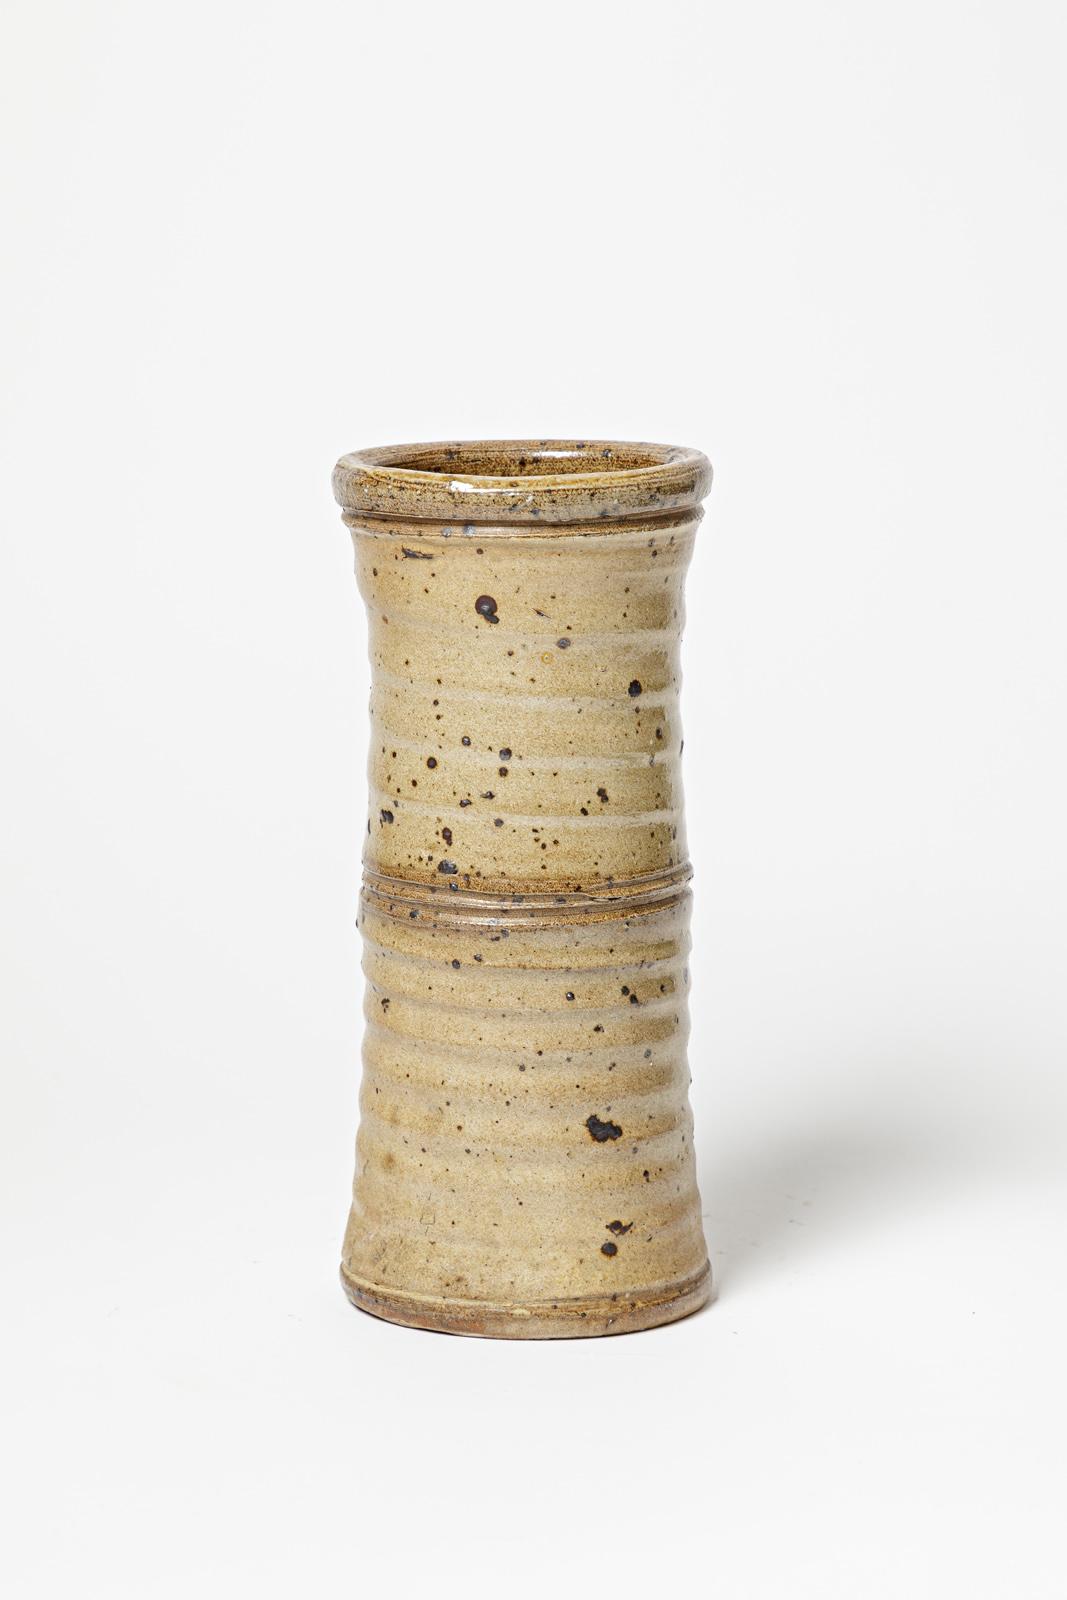 Gustave Tiffoche 

Vase en céramique de grès brun de l'artiste français

Pièce unique

Signé sous la base

Condition originale parfaite.

Hauteur 25 cm
Large 12 cm